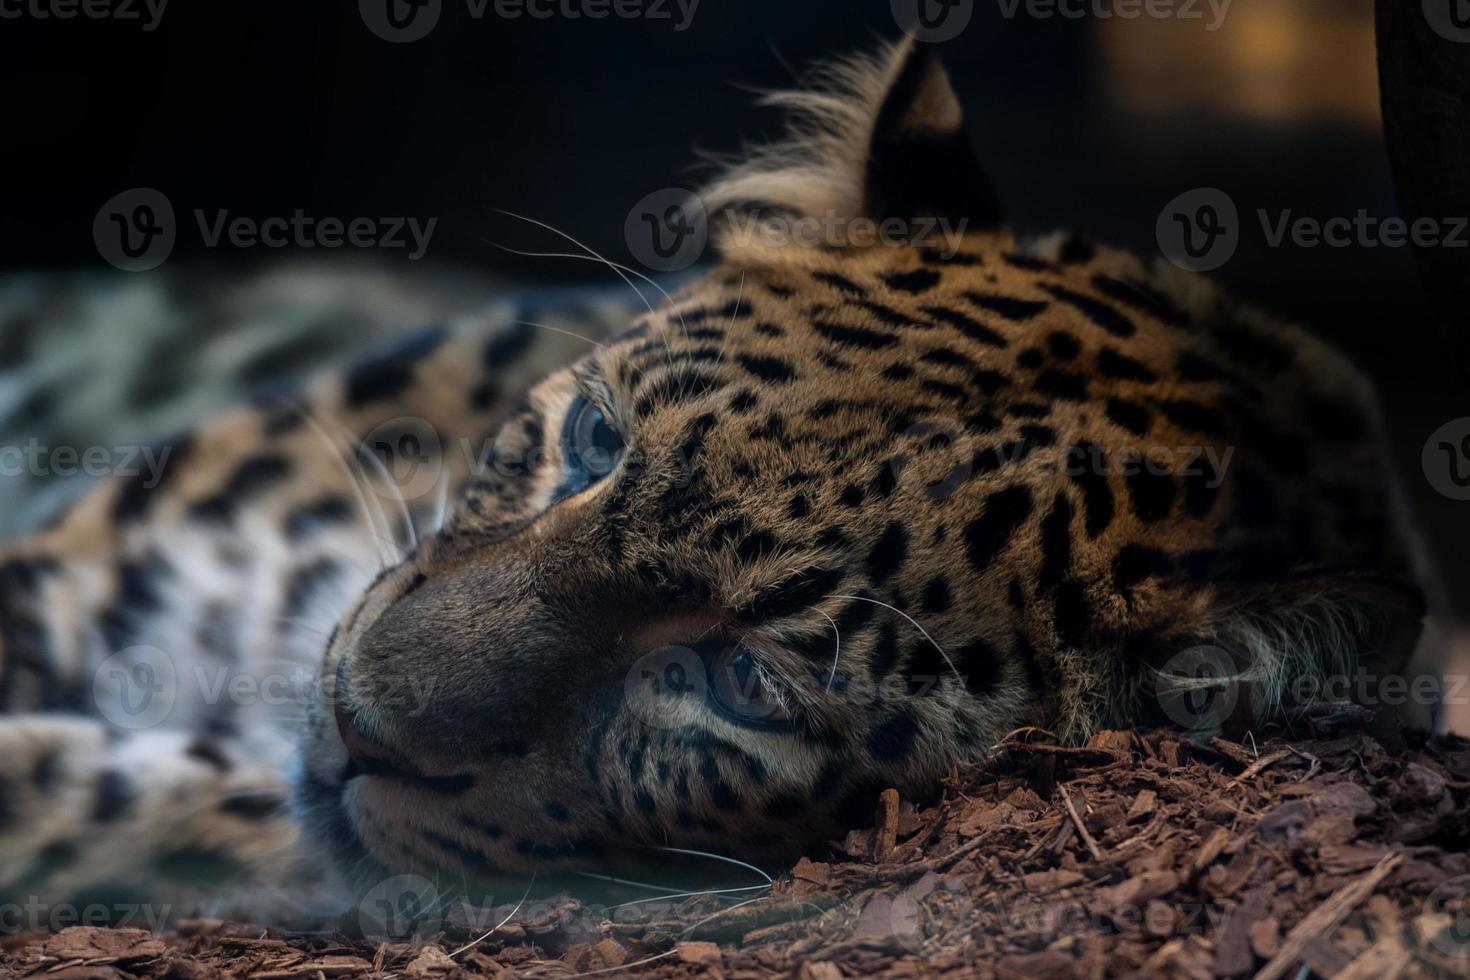 leopardo do norte da china de perto foto